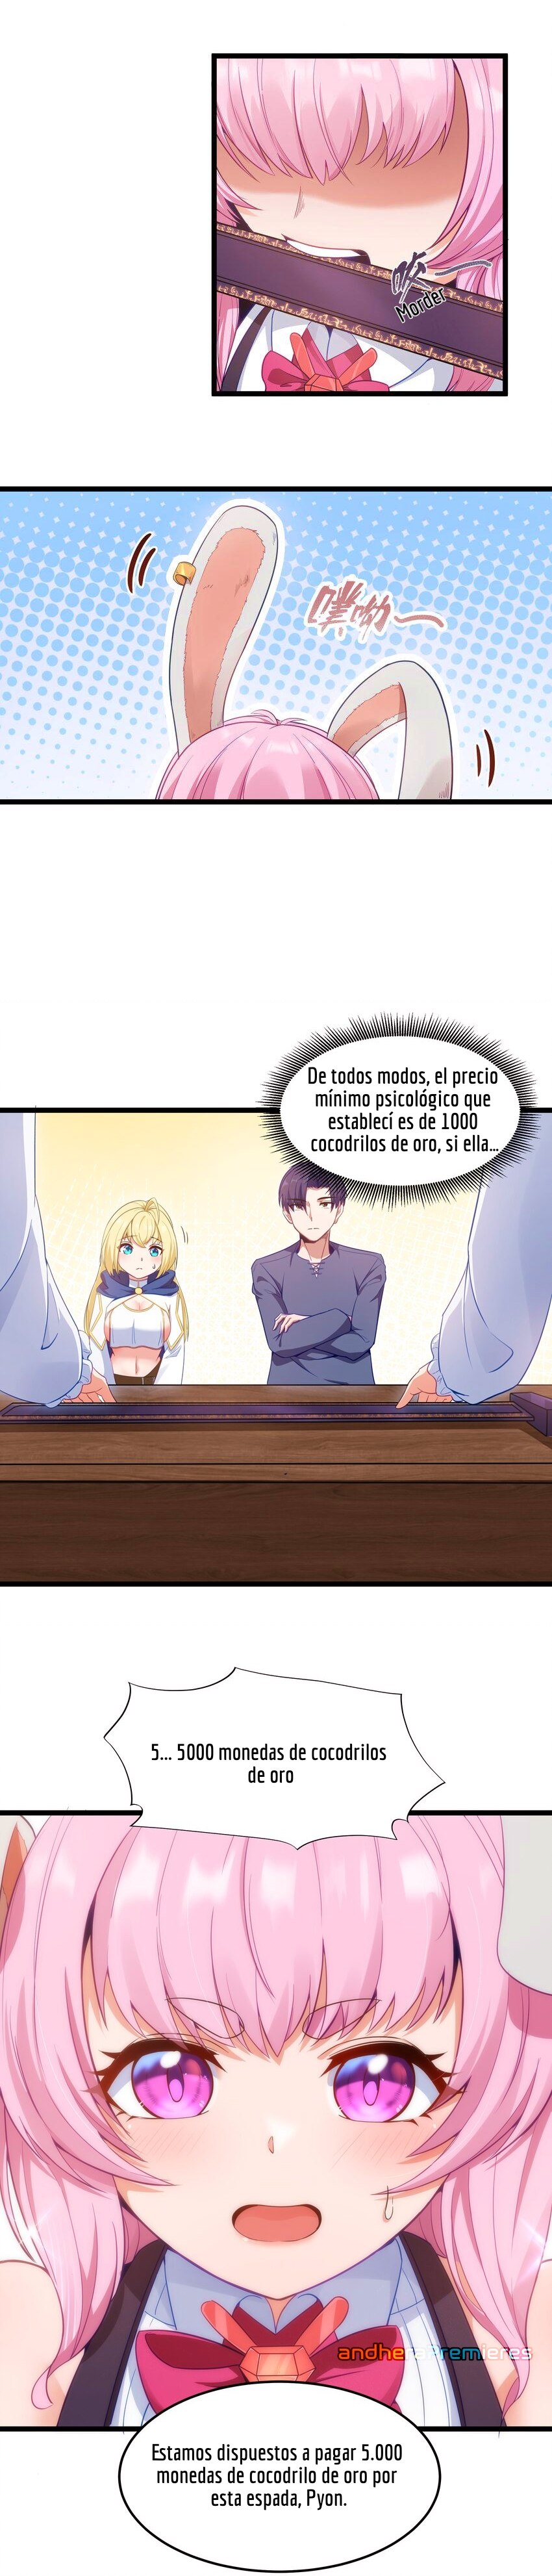 Manga El Héroe de la Avaricia Chapter 2 image number 11